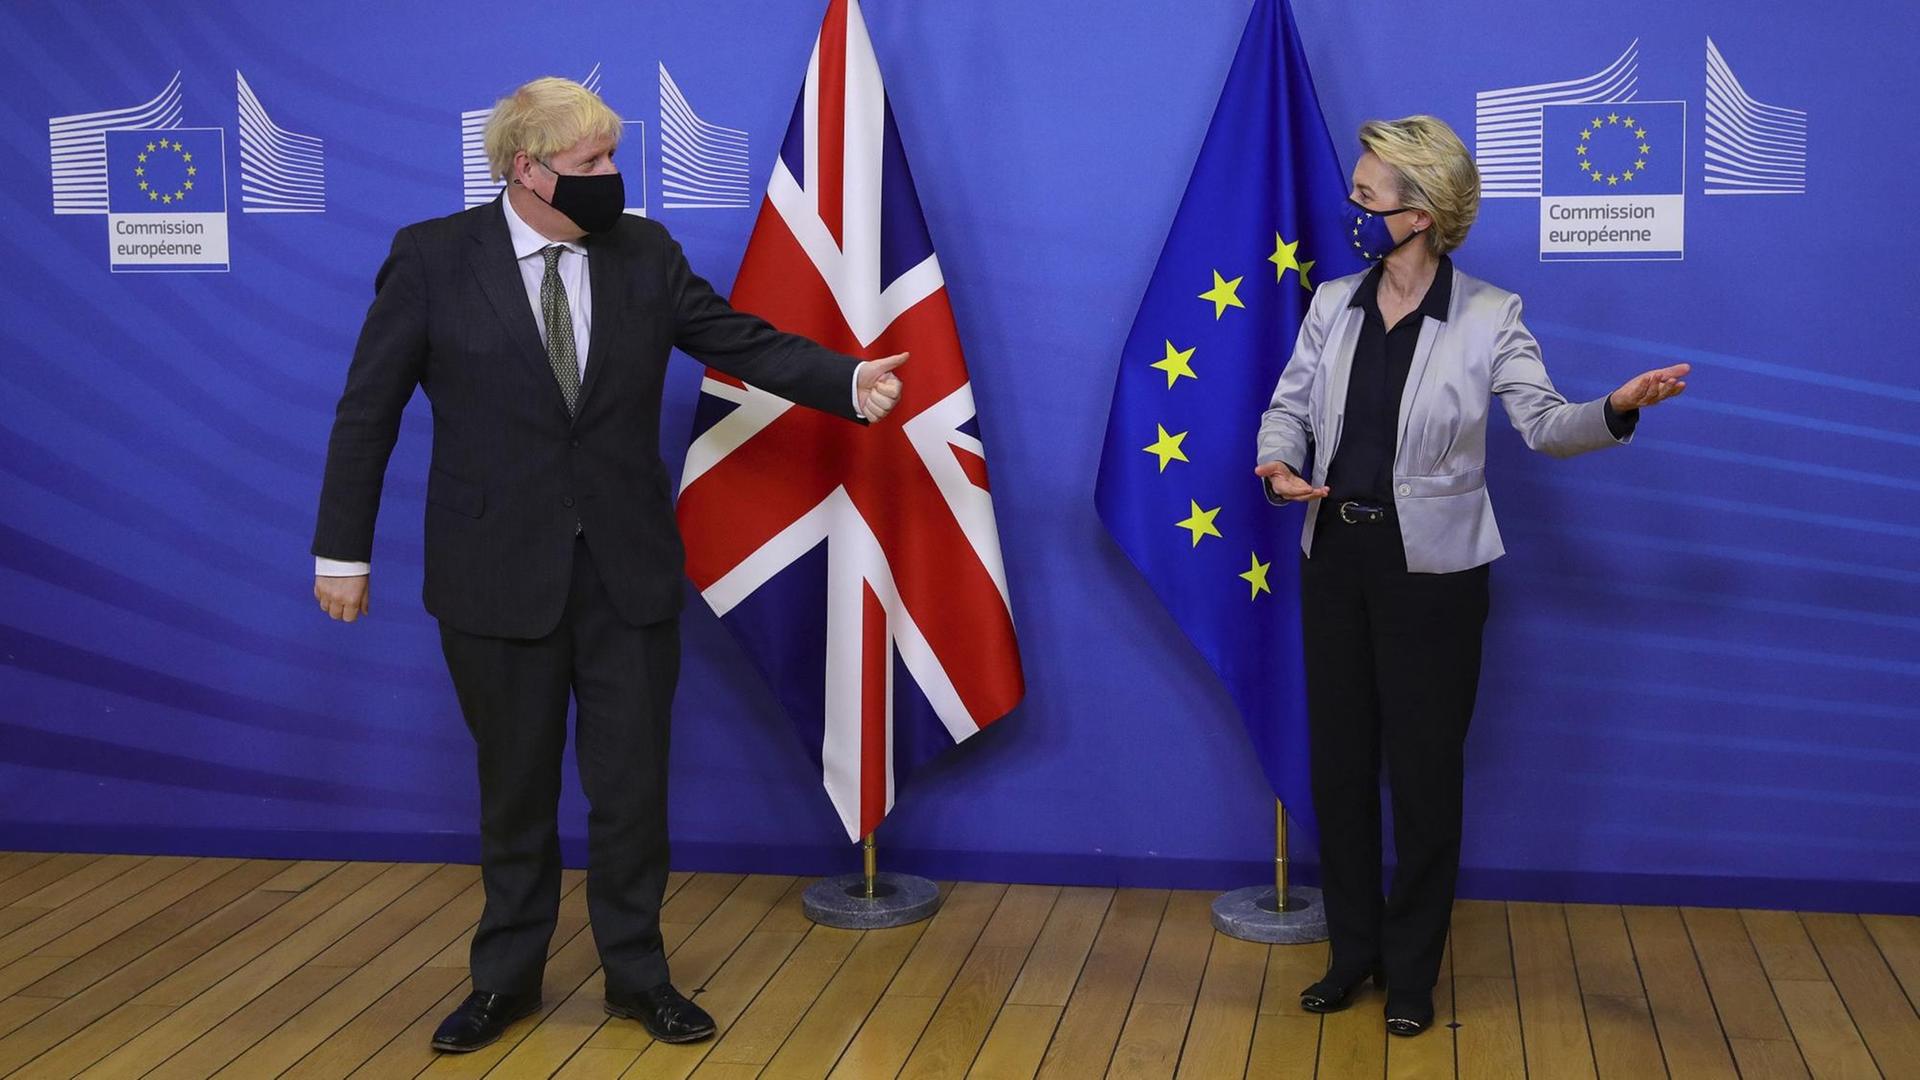 Der Regierungs-Chef von Groß-Britannien, Boris Johnson, steht vor der Flagge seines Landes. Neben ihm die Chefin von der EU-Kommission, Ursula von der Leyen, die vor der Flagge der EU steht. Beide Politiker tragen einen Mundschutz.